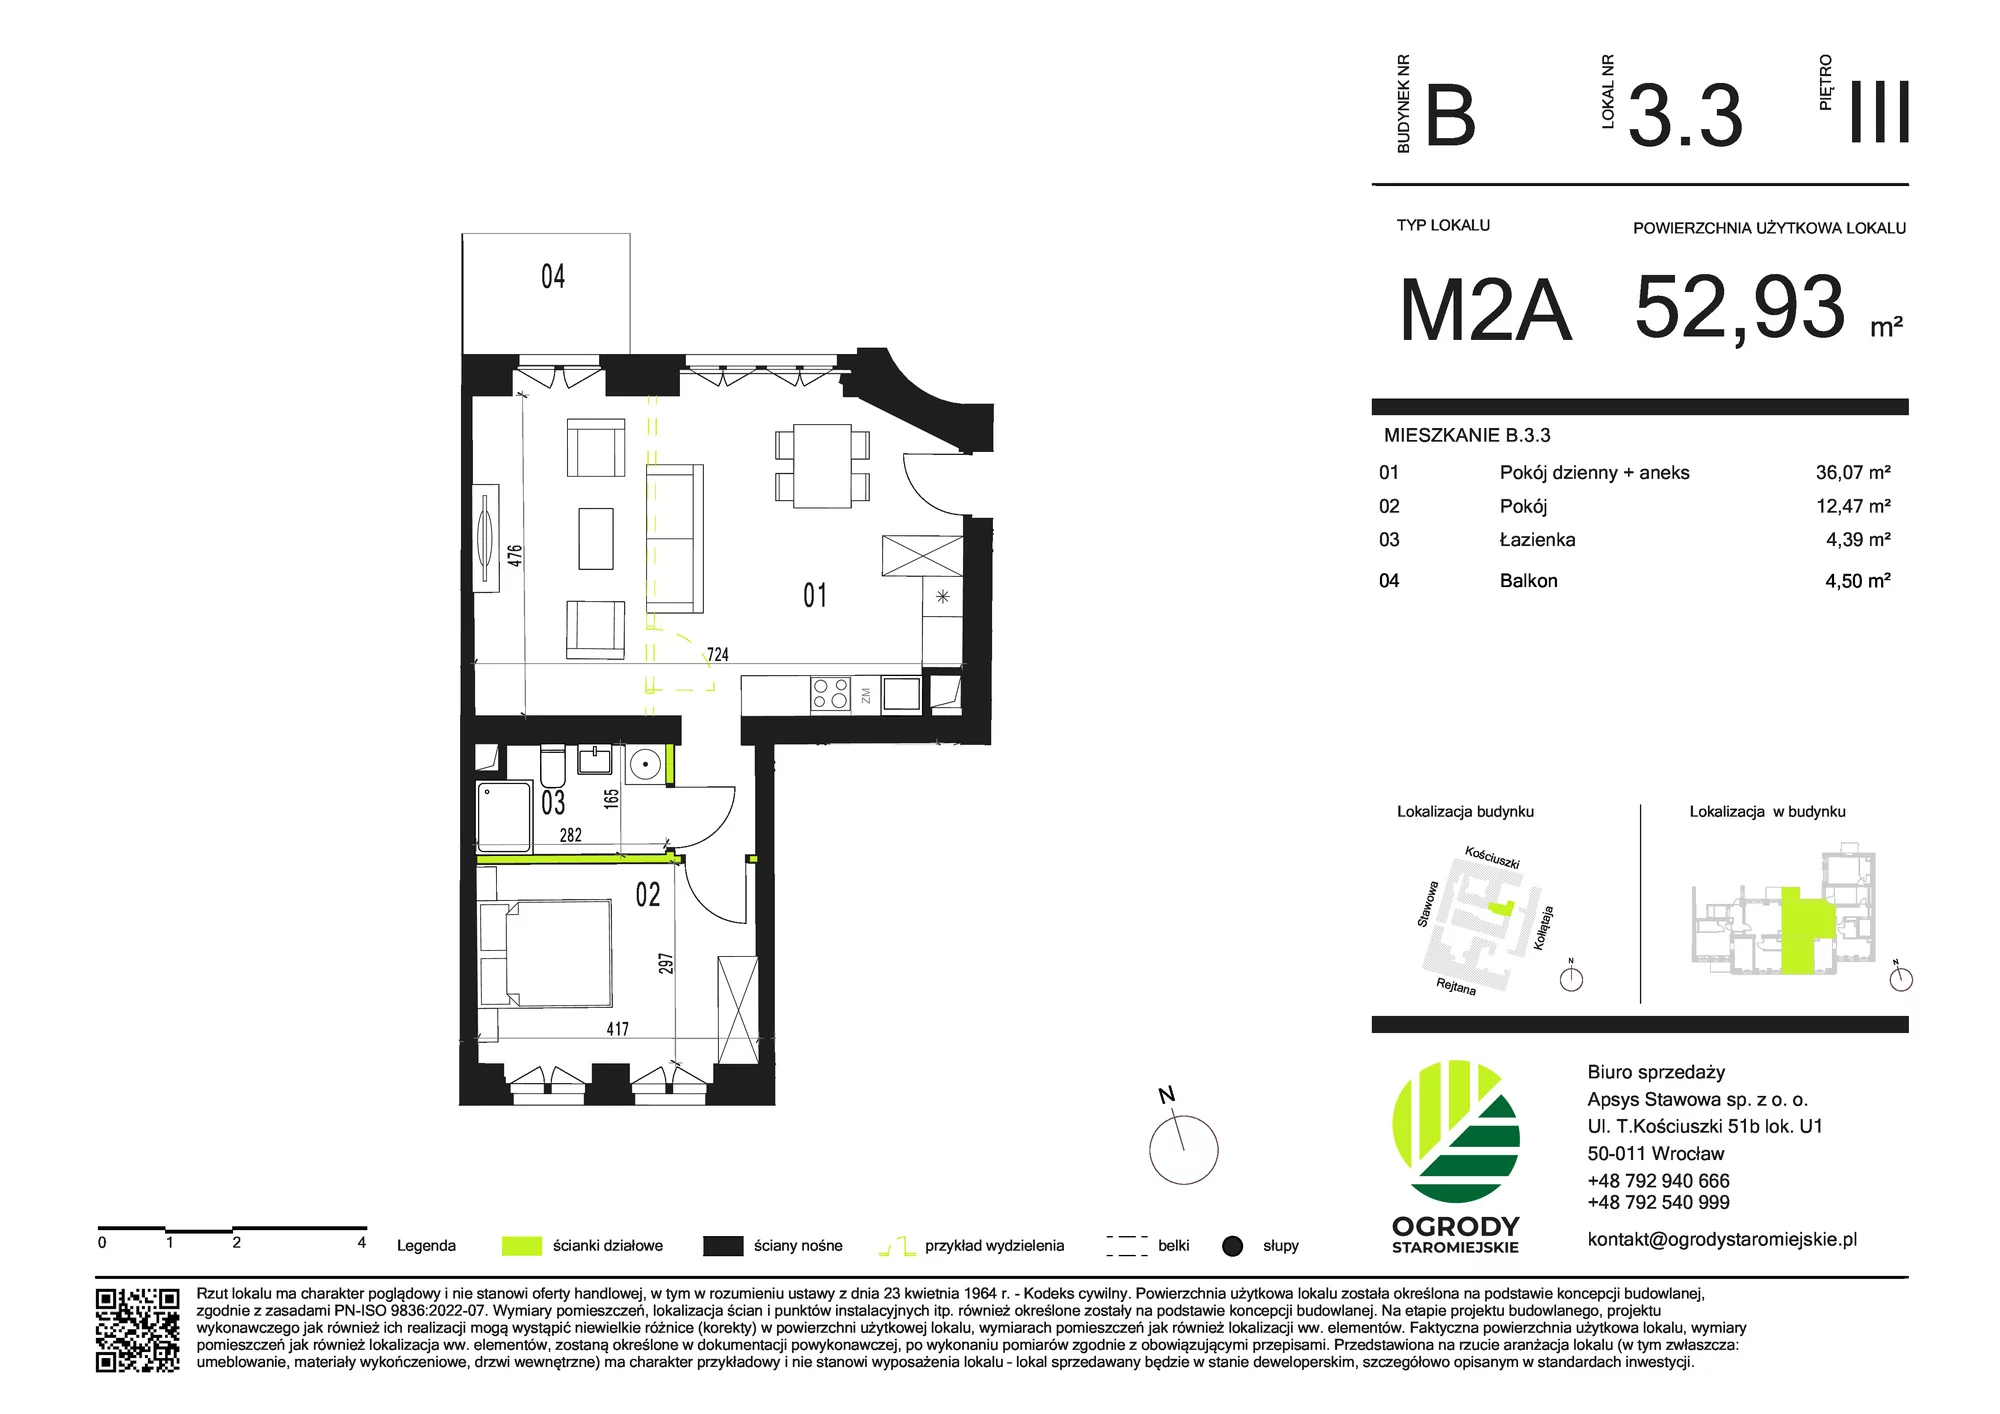 Mieszkanie 52,93 m², piętro 3, oferta nr B.3.3, Ogrody Staromiejskie, Wrocław, Przedmieście Świdnickie, ul. Stawowa 10